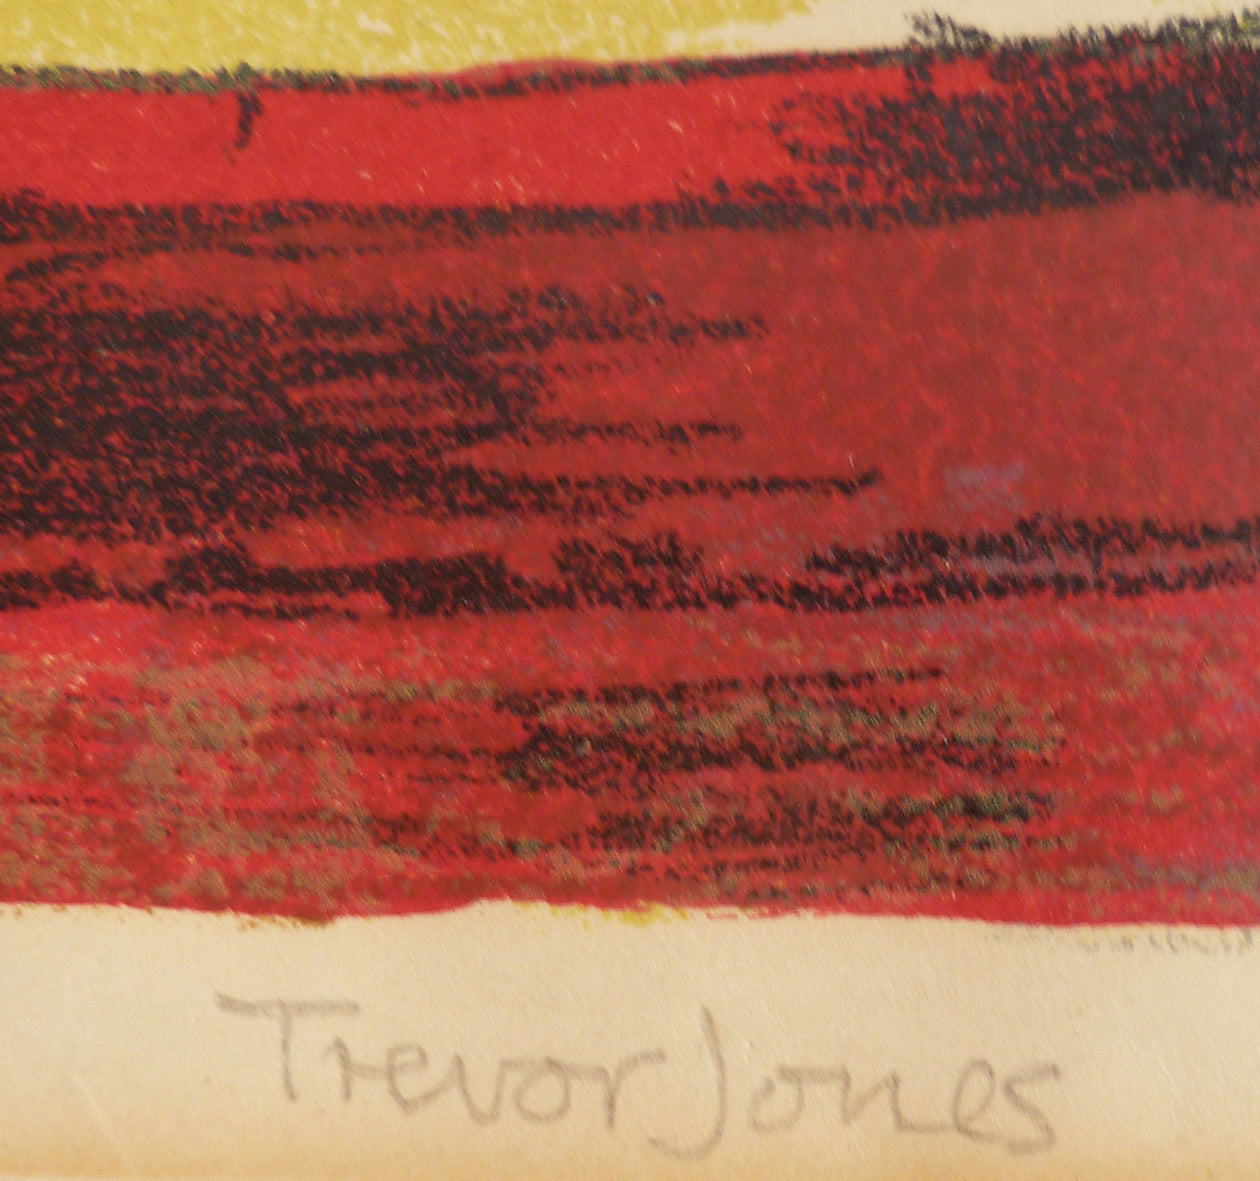 Trevor Jones Colour Lithograph Chelsea Reach Signature image